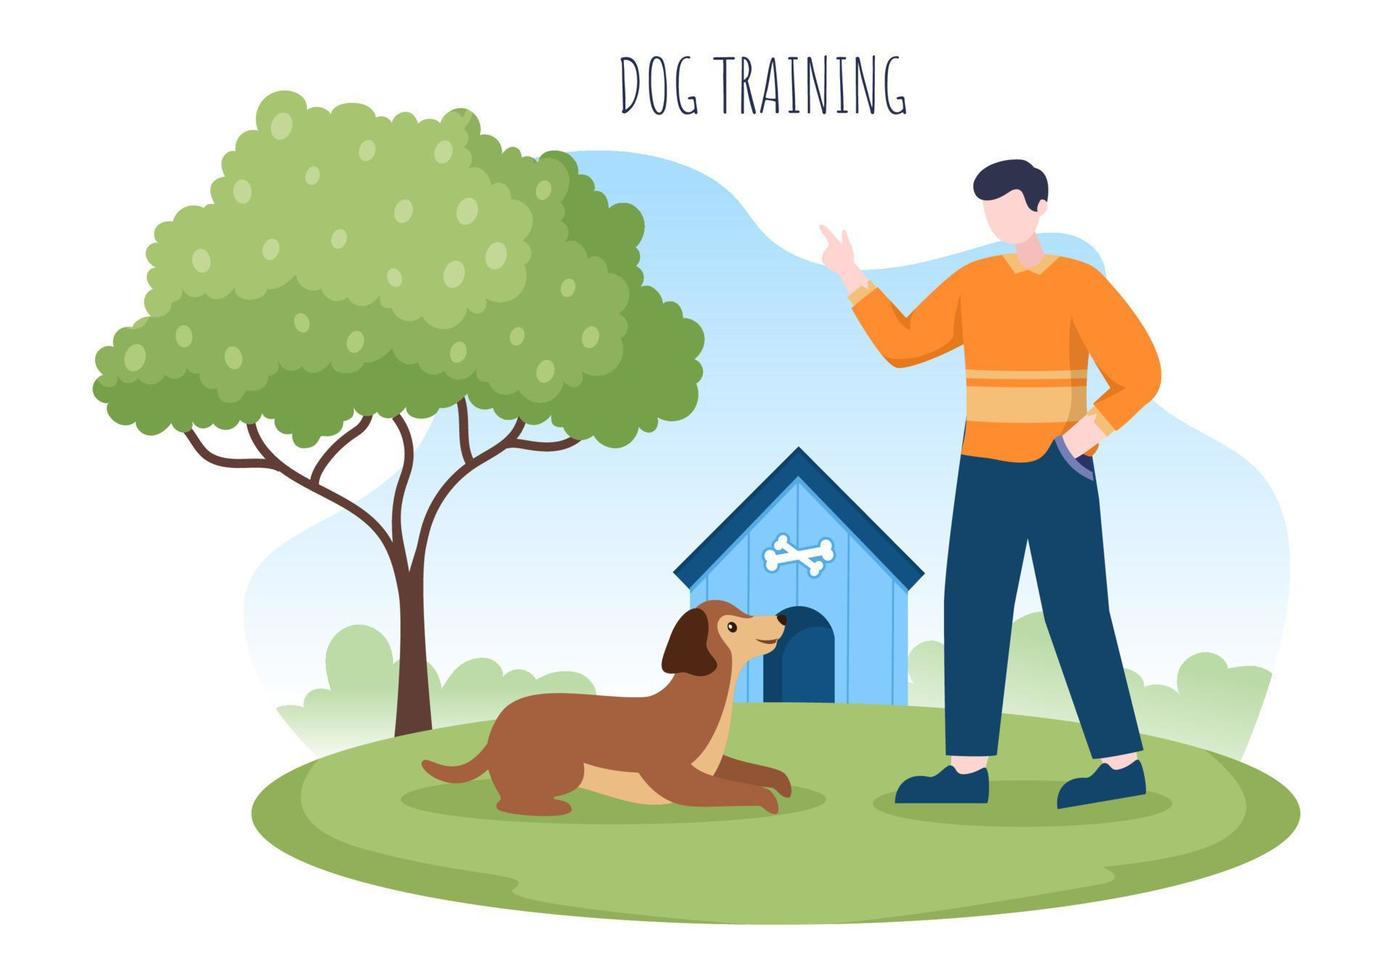 centro de entrenamiento de perros en el patio de recreo con instructor enseñando mascotas o jugando para trucos y habilidades de salto en ilustración de fondo de caricatura plana vector